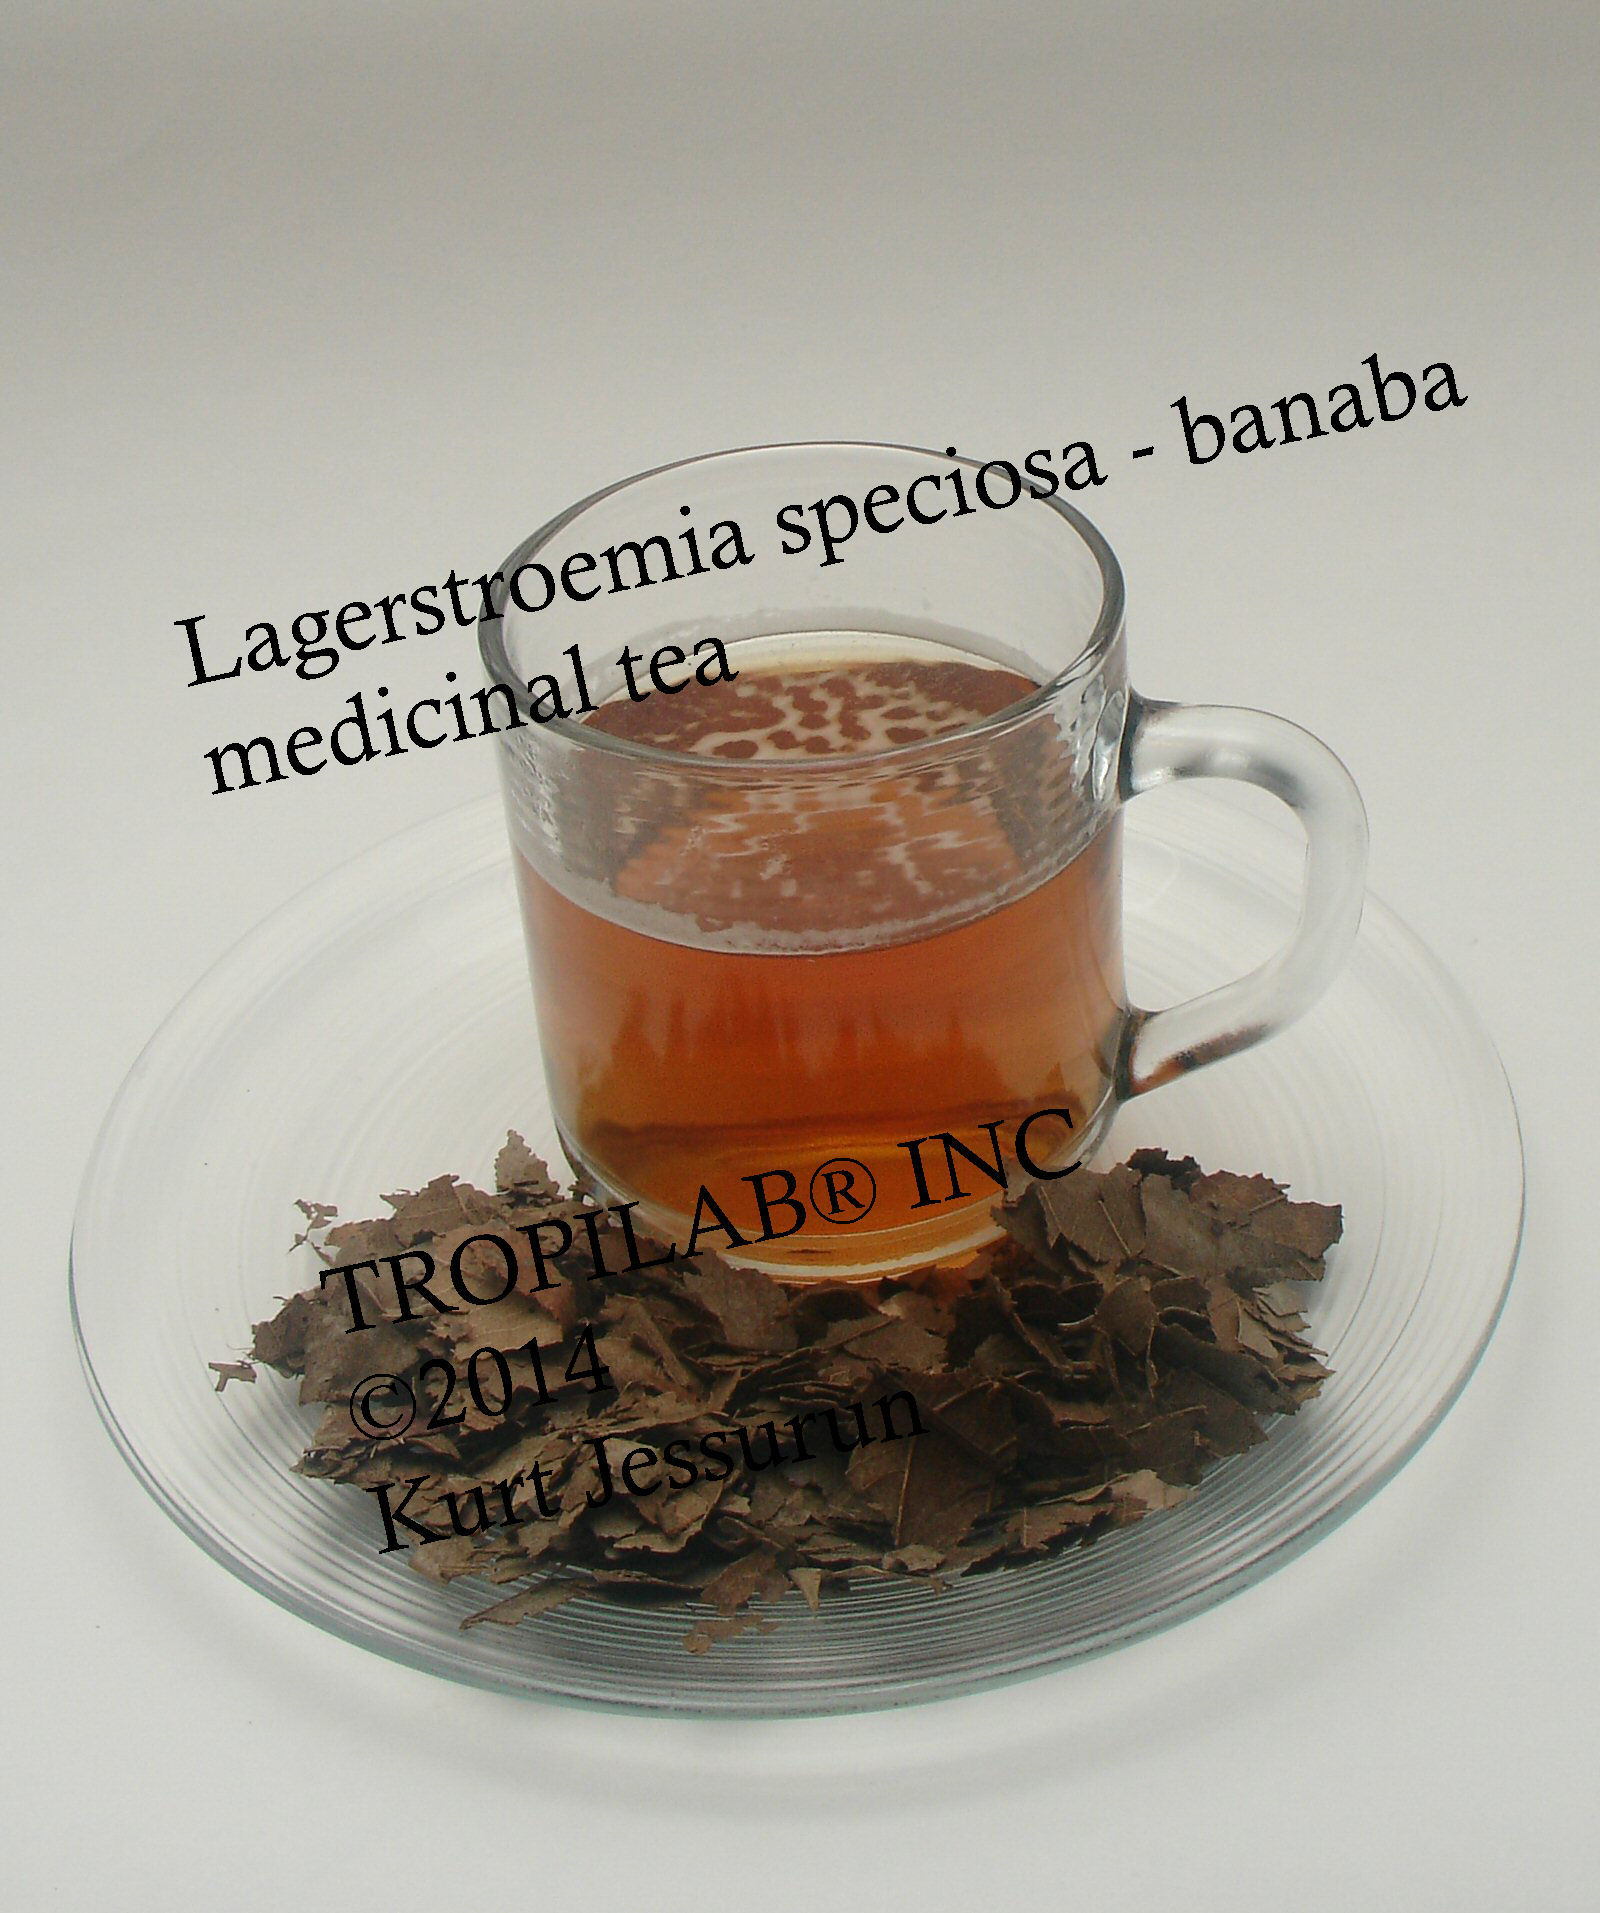 Banaba, Lagerstroemia speciosa thee, is nuttig bij de preventie- en behandeling van extreem-overgewicht (zwaarlijvigheid) 
bij type 2 diabetes; het is ook een veilig en populair ingredient in voedingssupplementen voor gewichtsvermindering (vet-verbranders) en producten voor het ontgiftigen (detox) van het lichaam